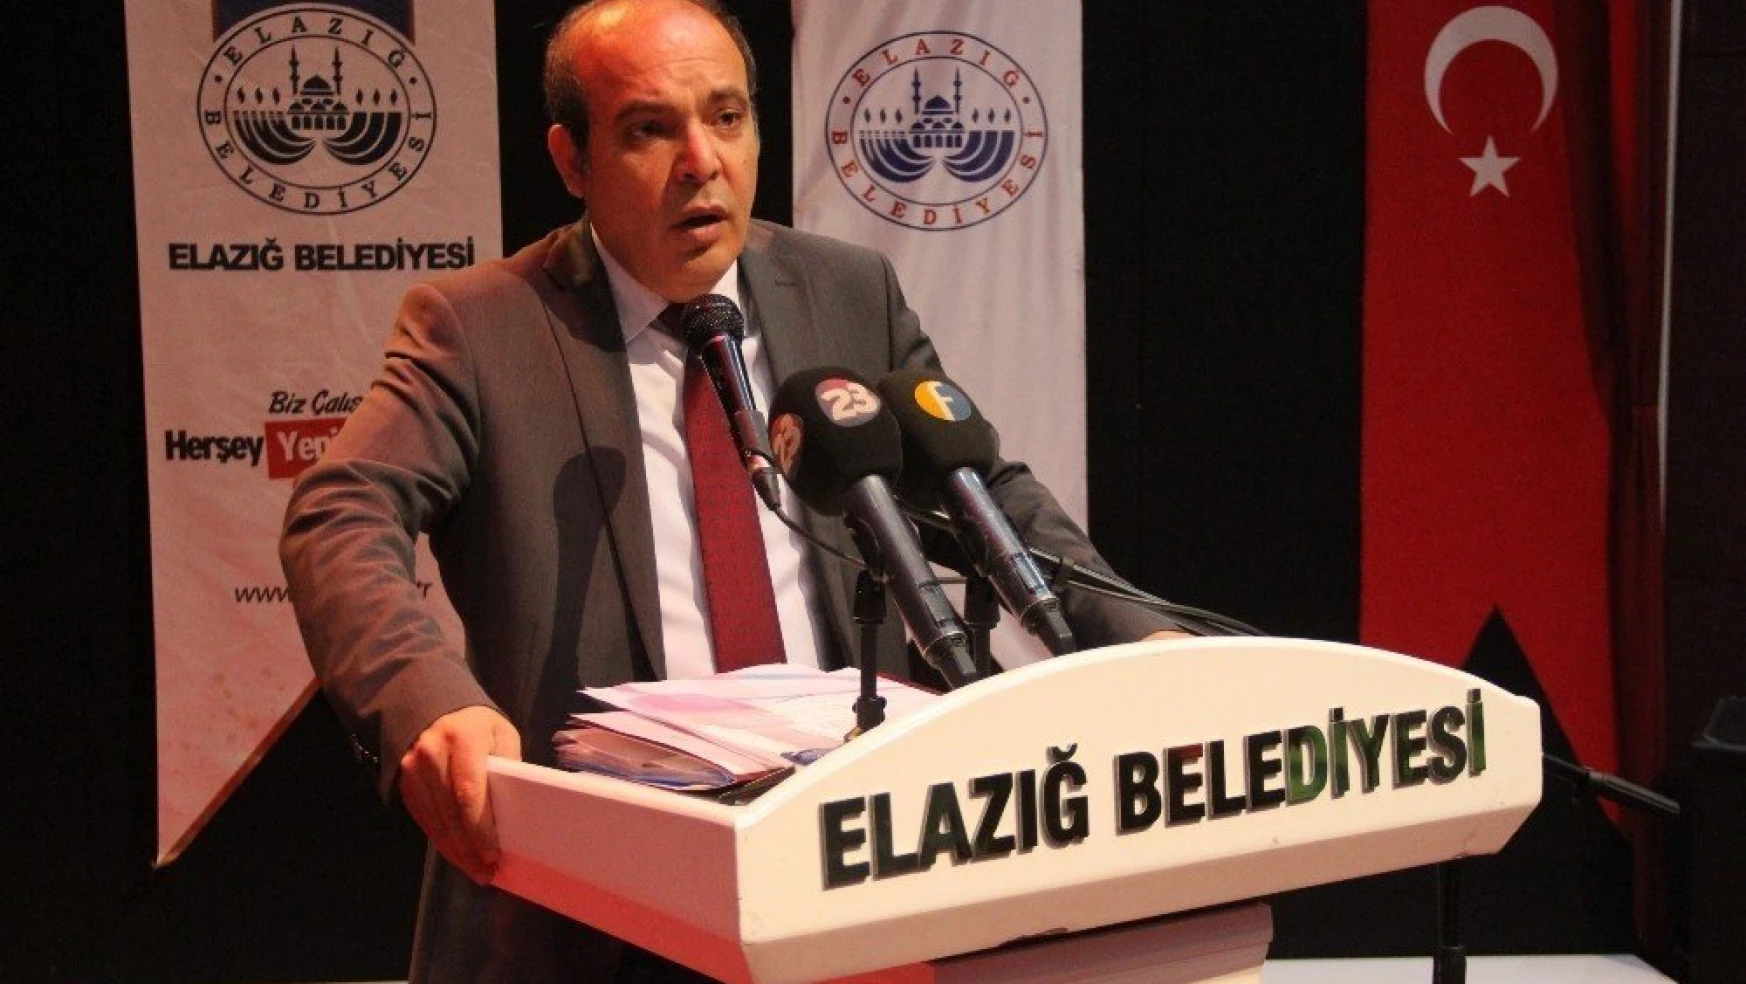 Beklenen Oldu, Elazığspor'da Olağanüstü Genel Kurul Ertelendi